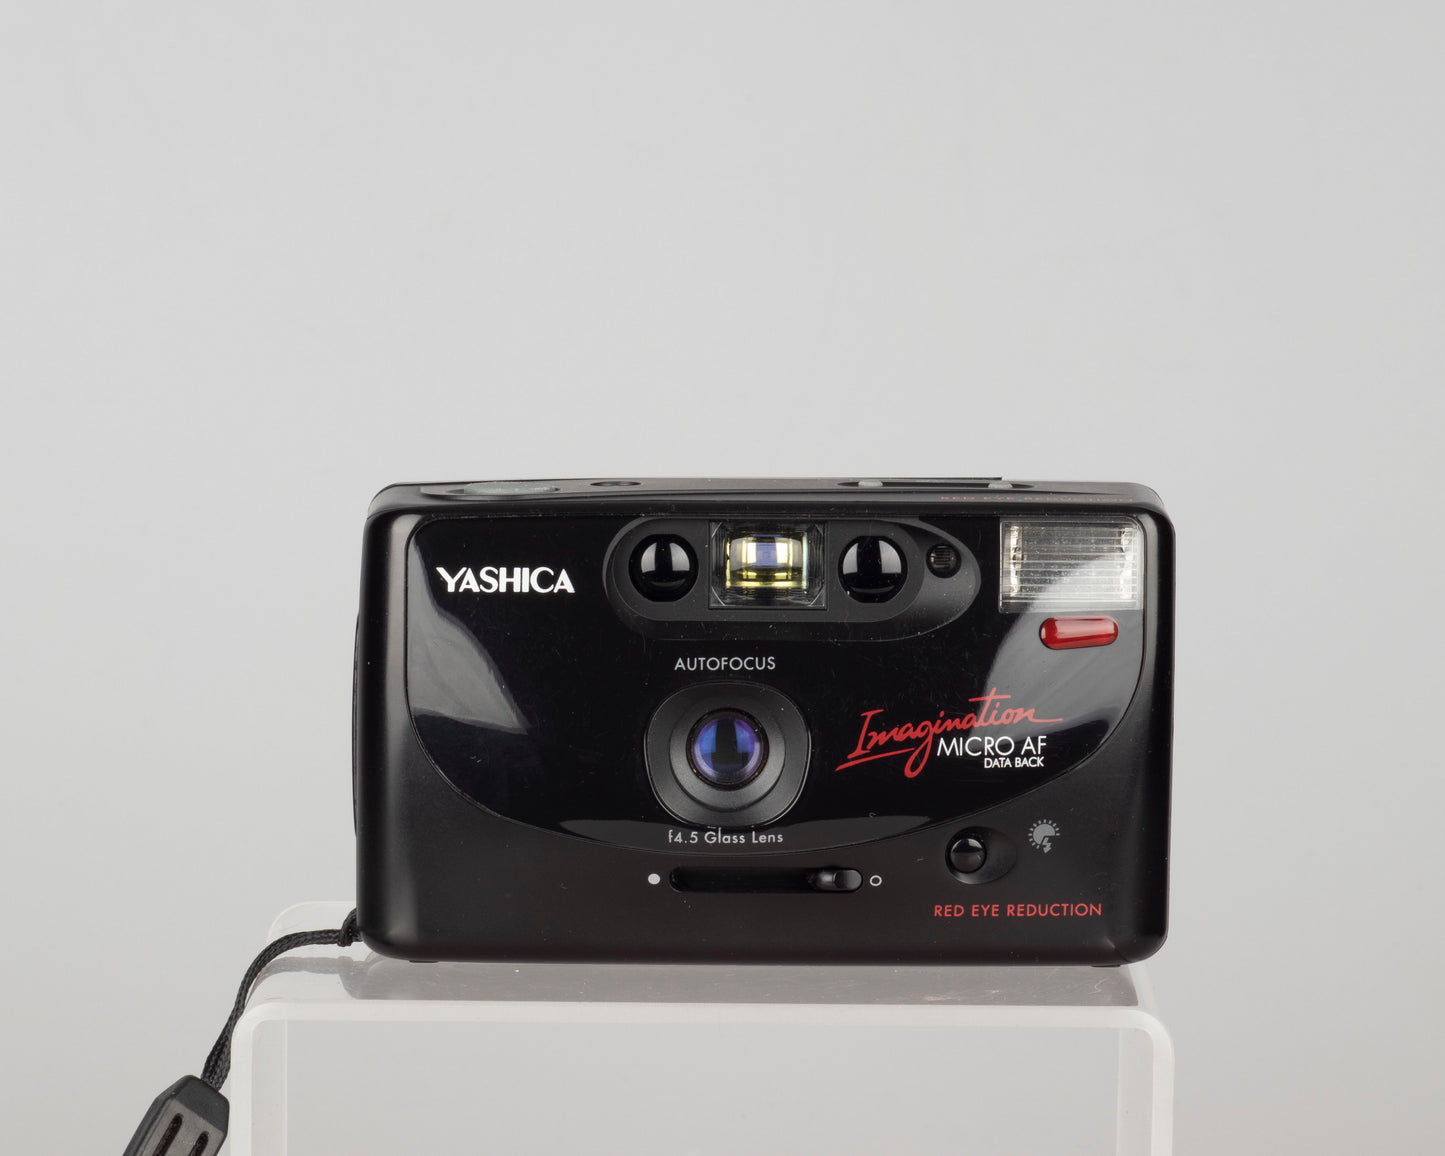 Yashica Imagination Micro AF Data Back Appareil photo argentique 35 mm avec étui